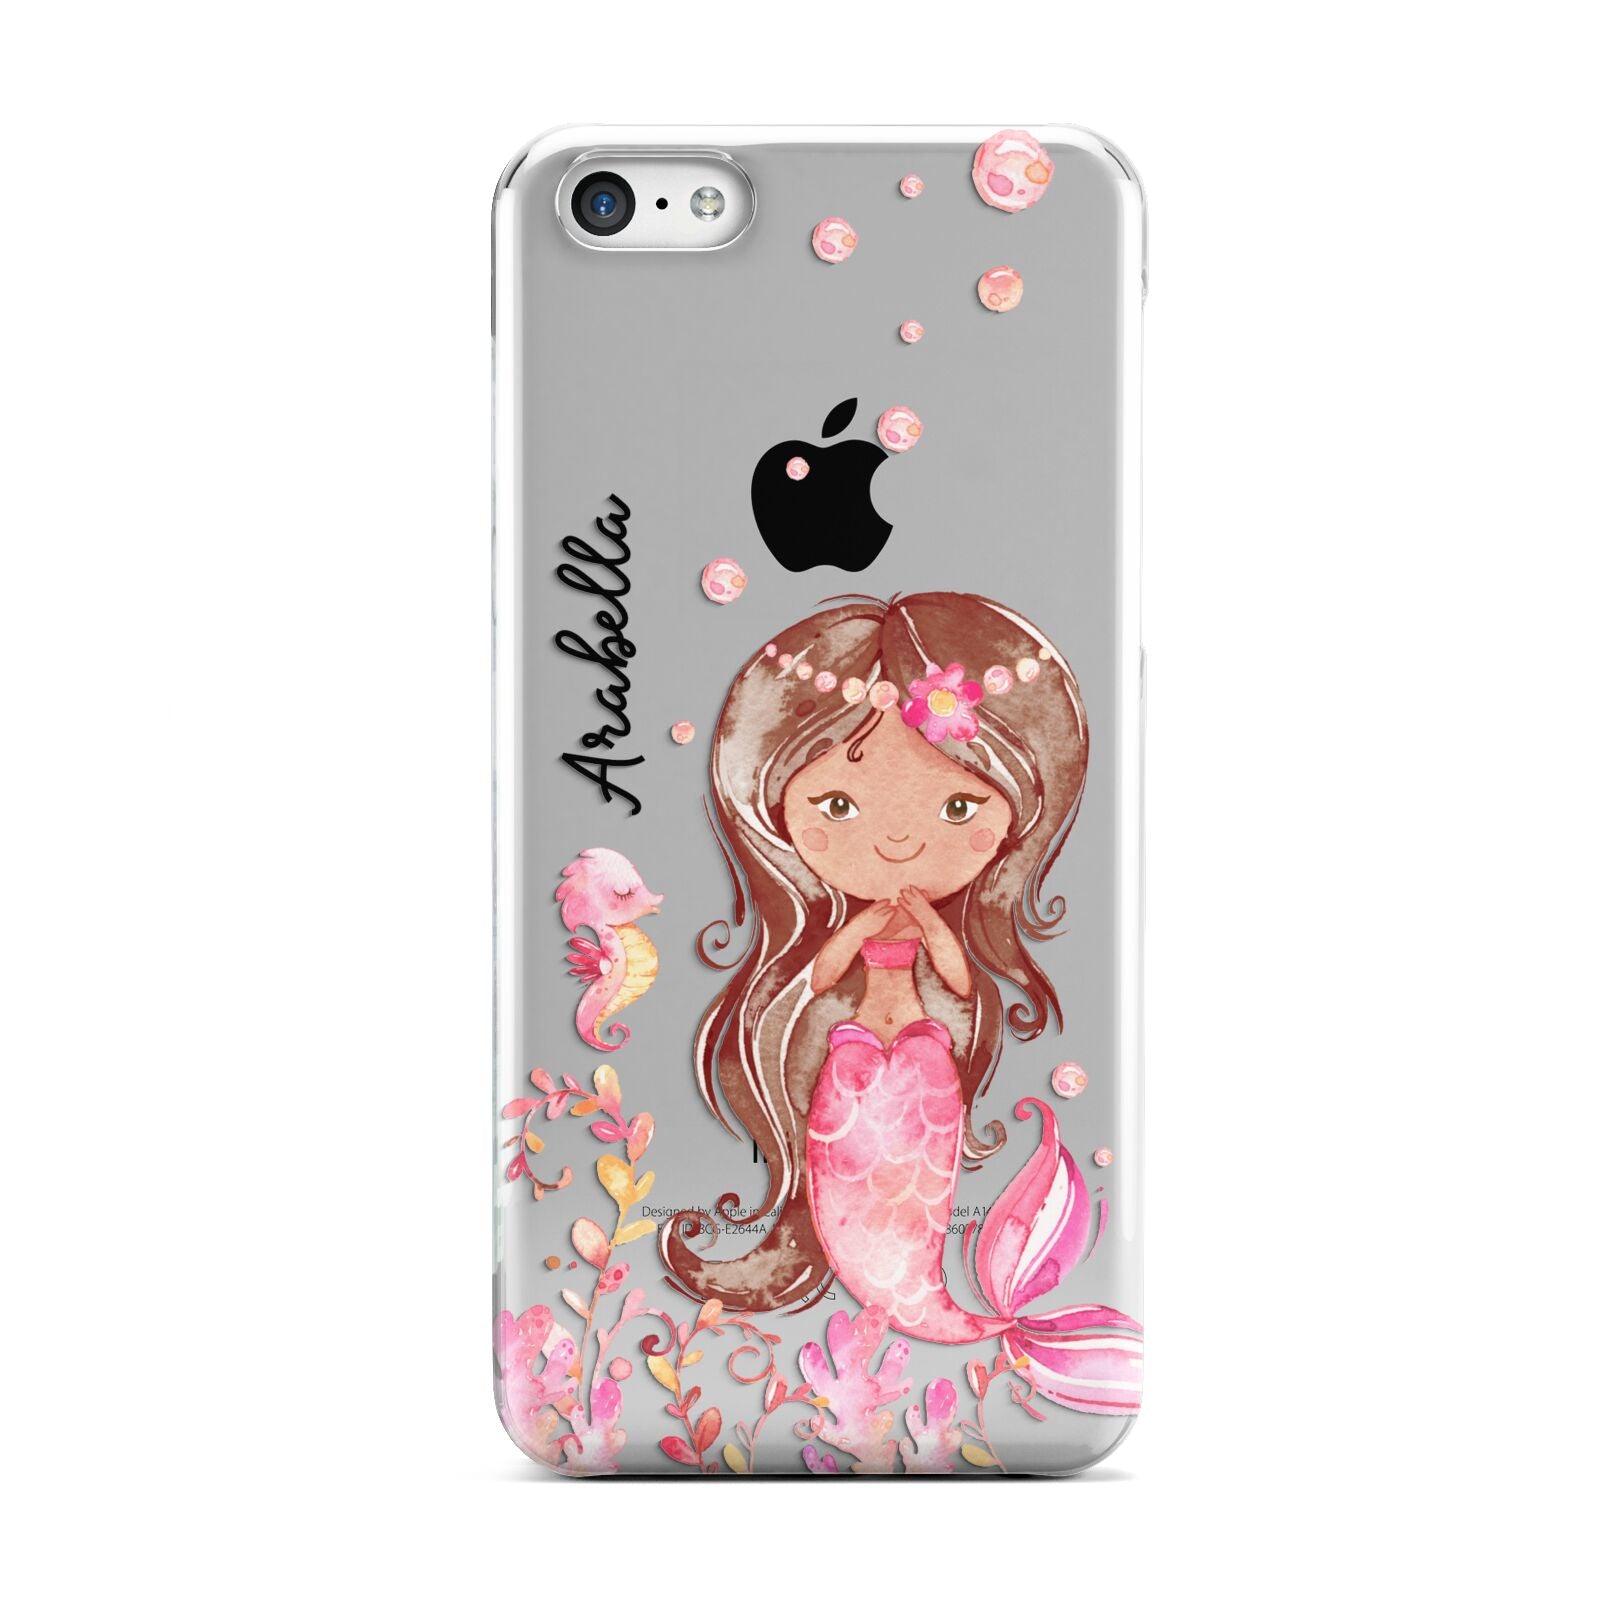 Personalised Pink Mermaid Apple iPhone 5c Case